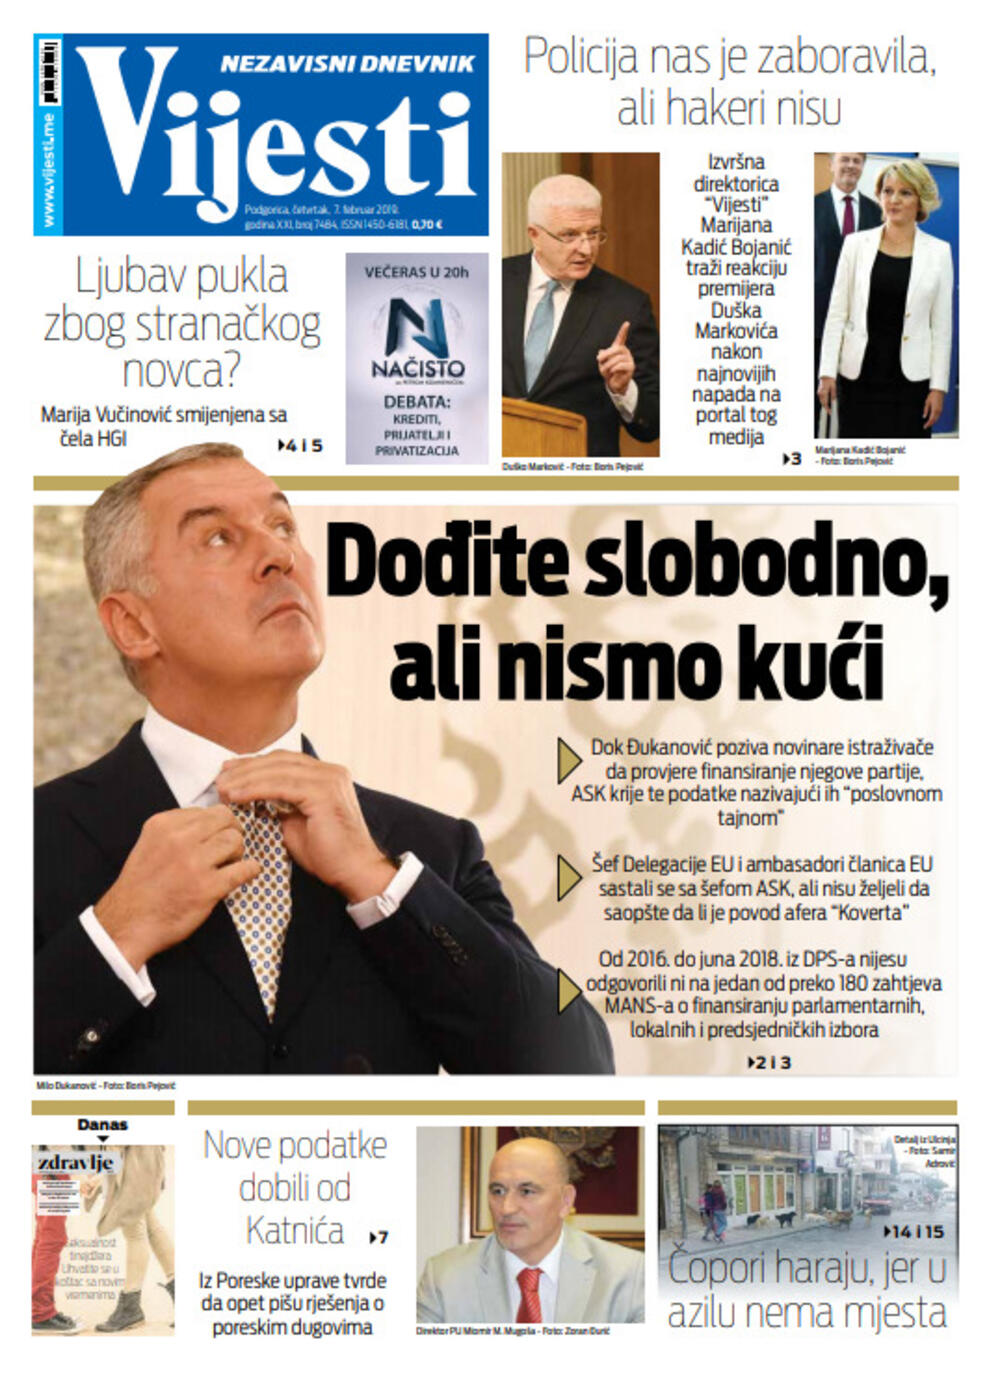 Naslovna strana "Vijesti" za sedmi februar, Foto: Vijesti